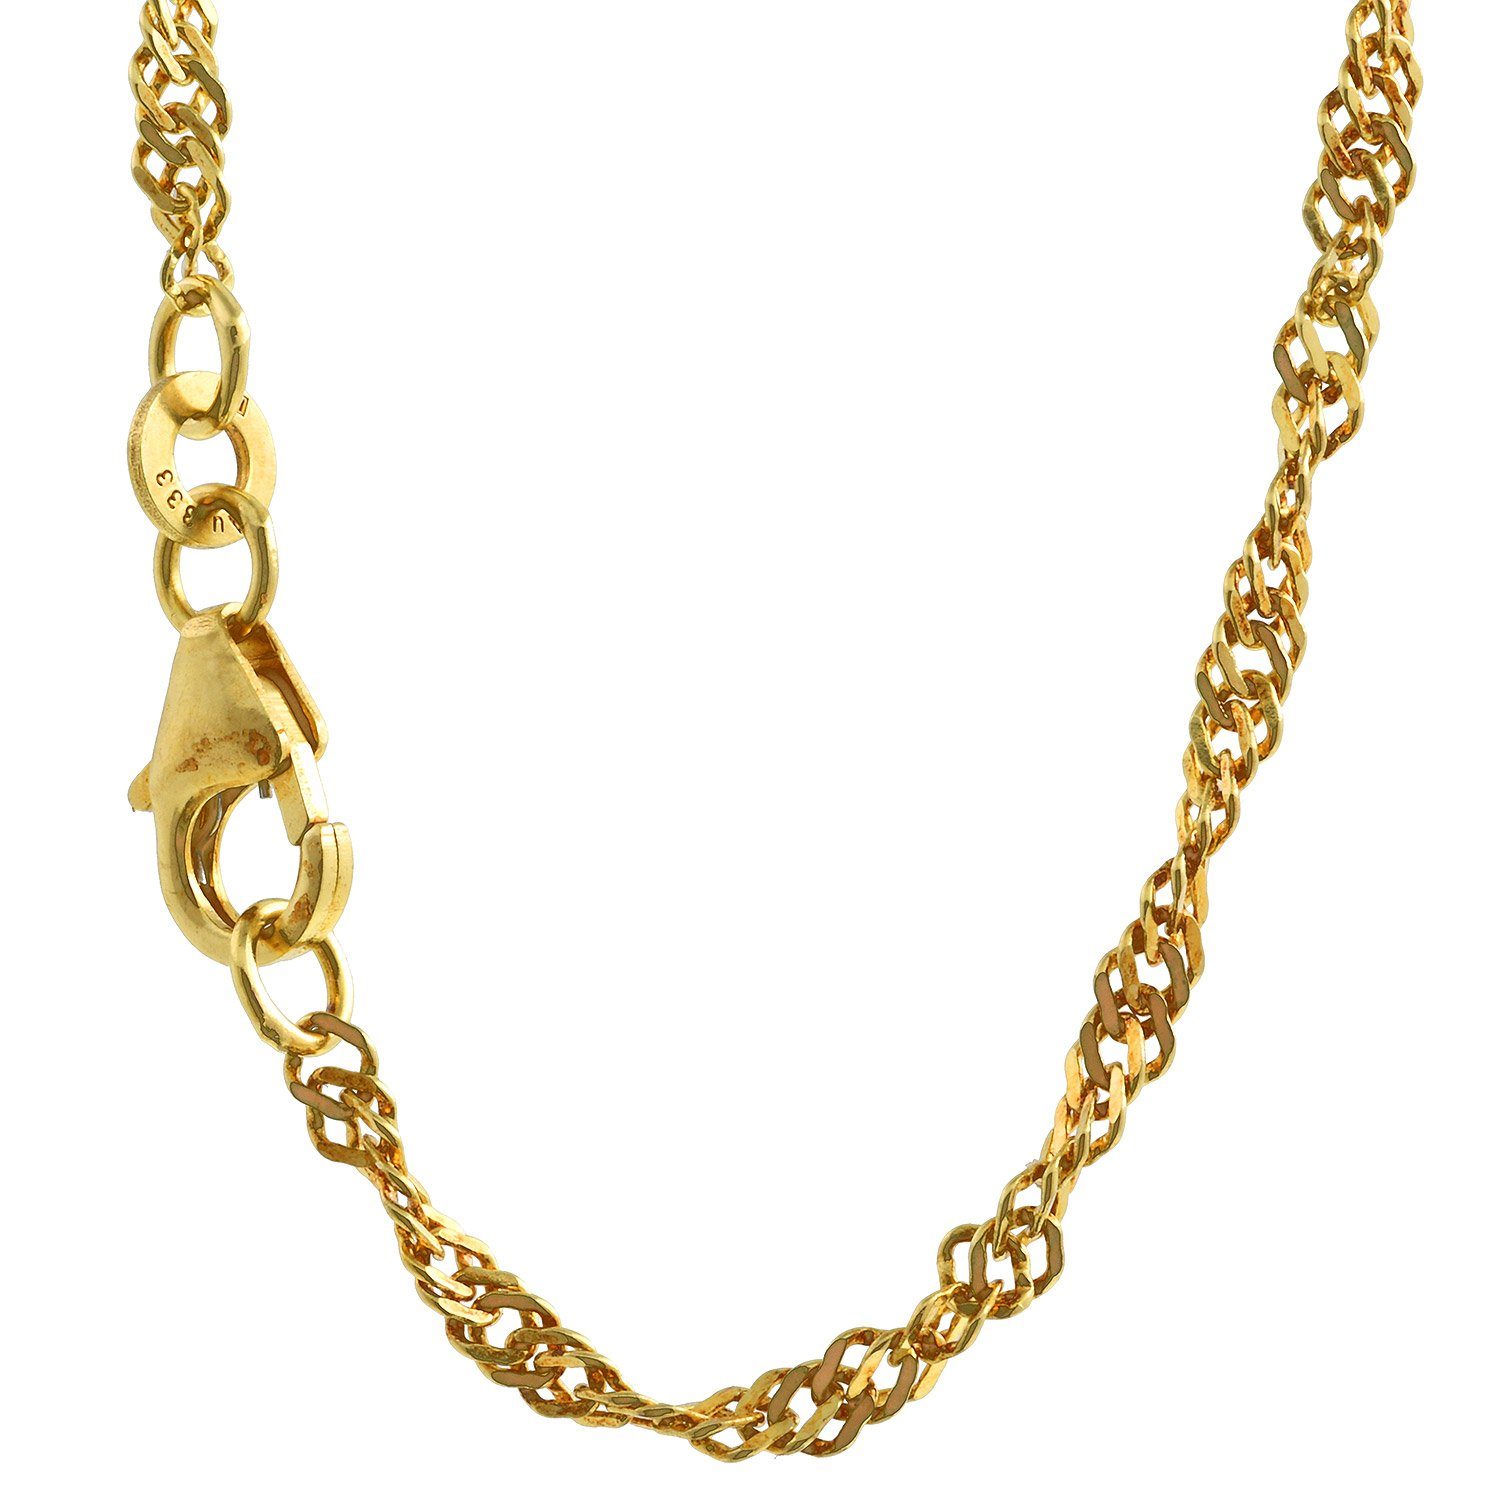 HOPLO Goldkette Singapurkette Halskette - Legierung 333 - 8 Karat Gold -  Kettenbreite 2,4 mm - Kettenlänge 42 cm, Made in Germany